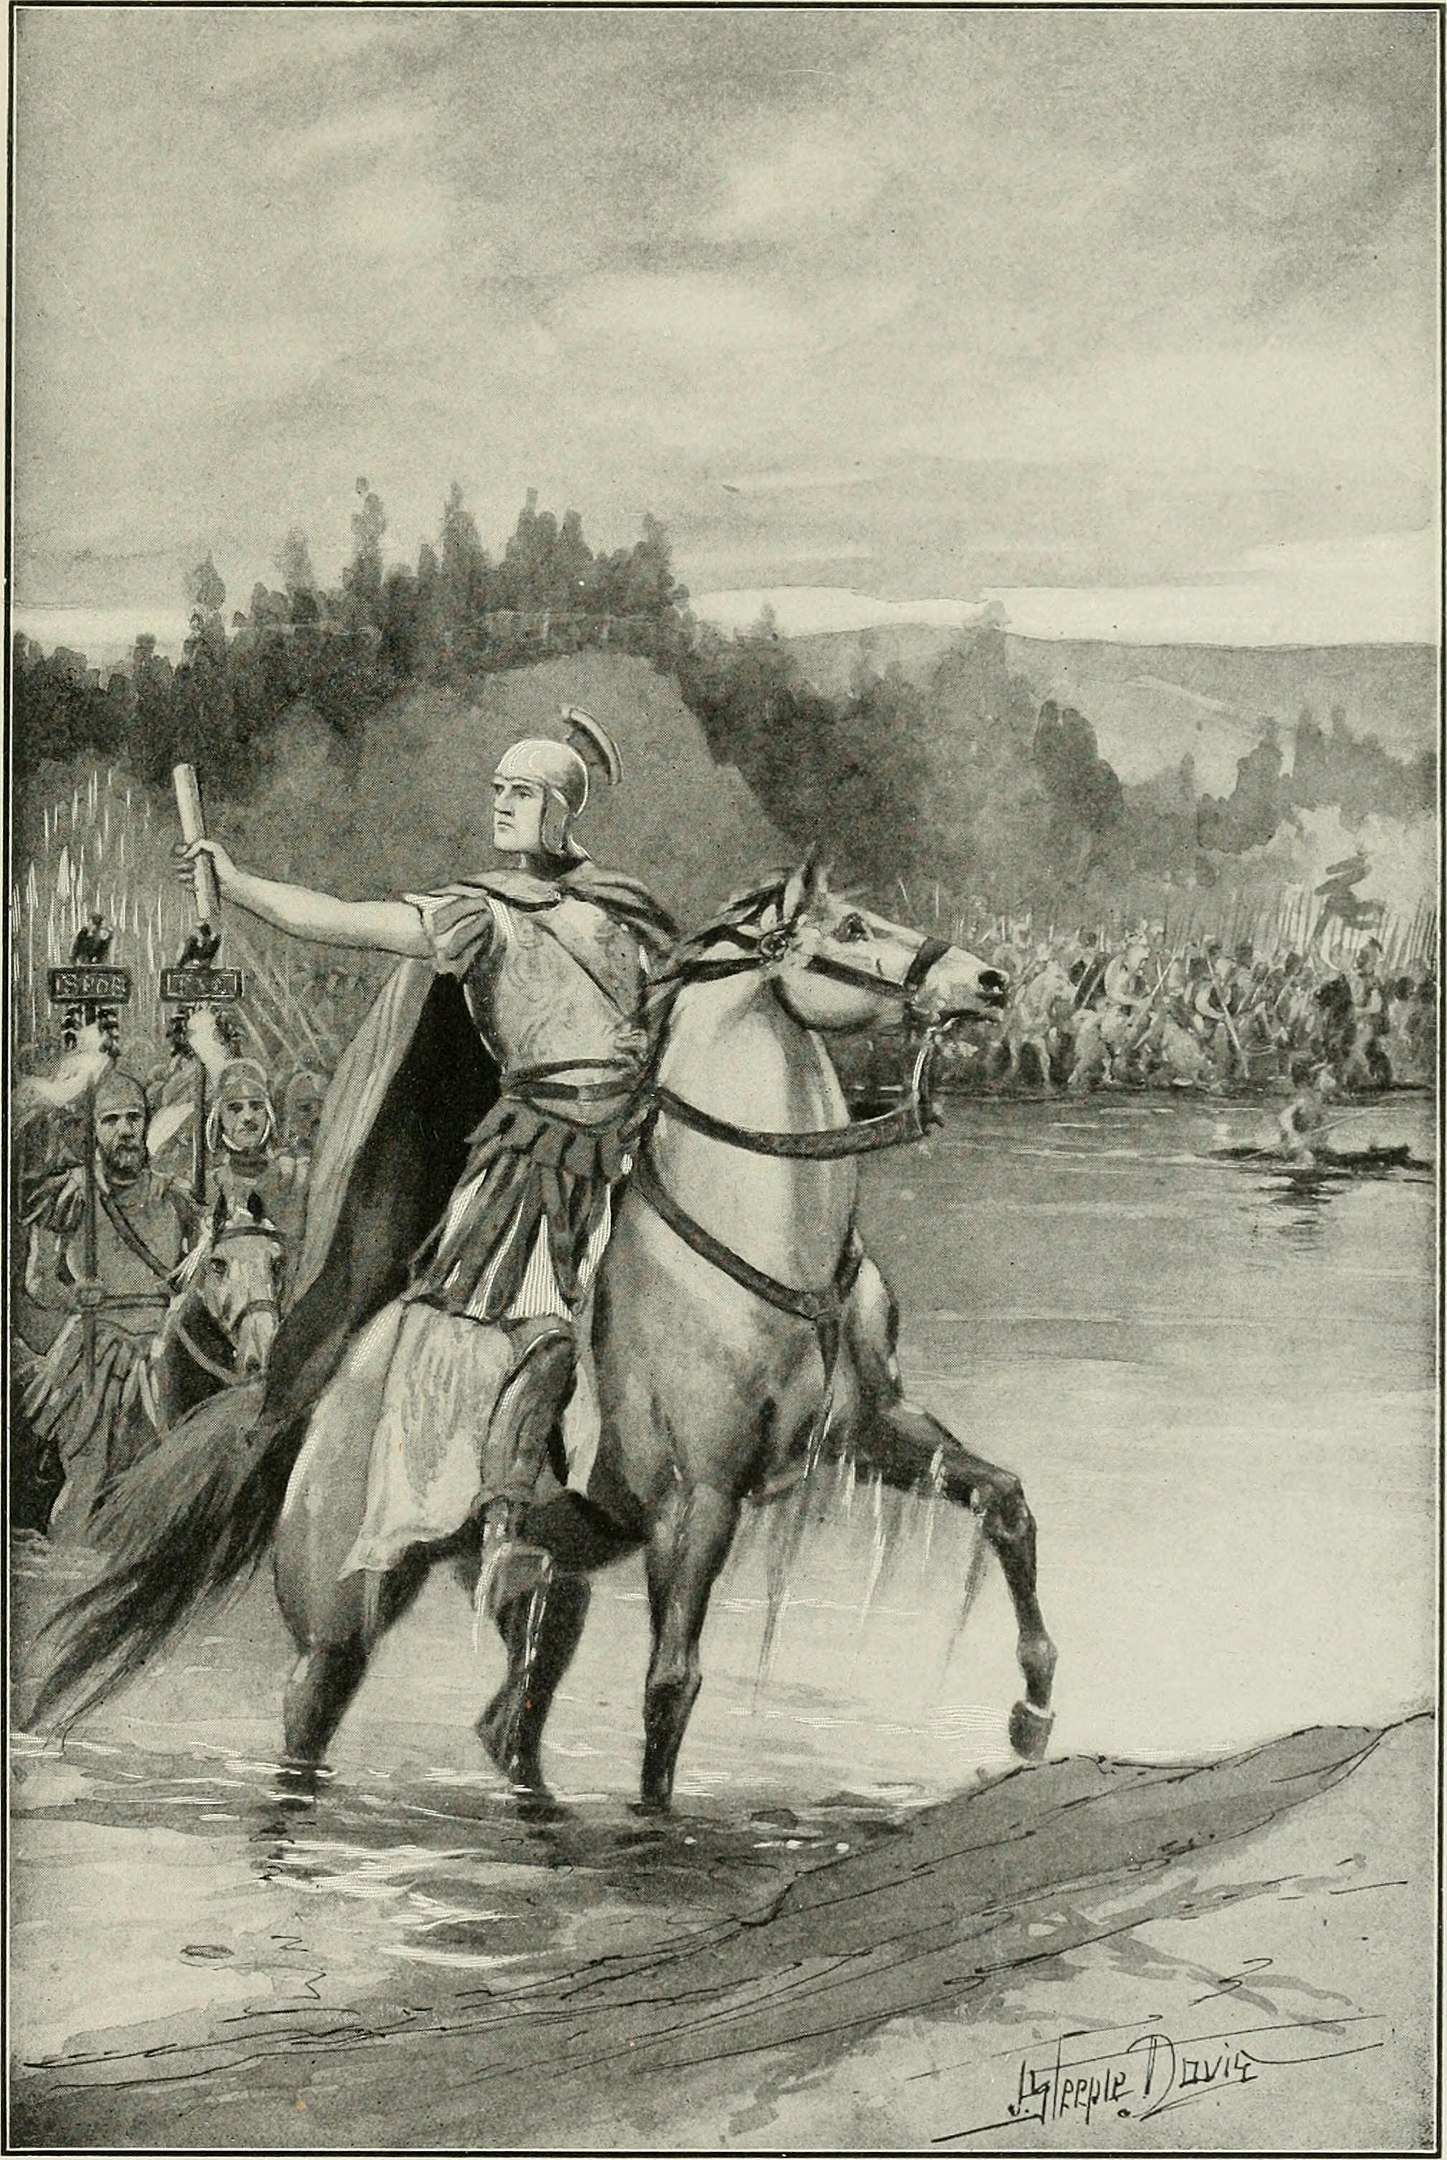 2 de agosto del 49 a.C. Pompeyo se rendía ante Julio César en la Batalla de Ilerda